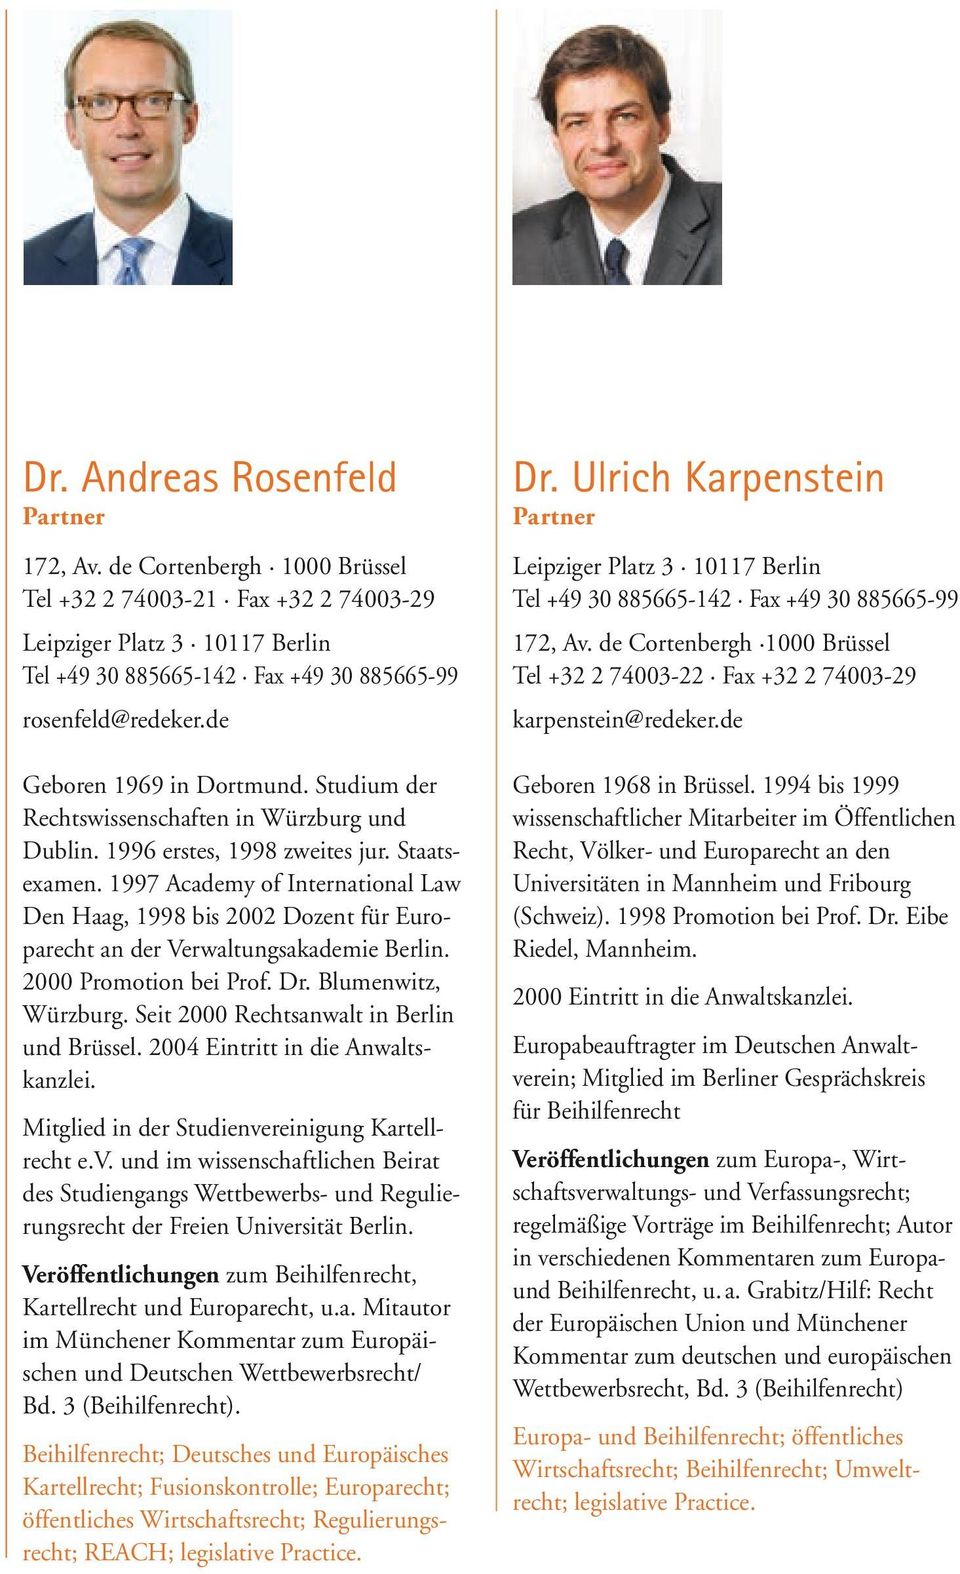 1997 Academy of International Law Den Haag, 1998 bis 2002 Dozent für Europarecht an der Verwaltungsakademie Berlin. 2000 Promotion bei Prof. Dr. Blumenwitz, Würzburg.